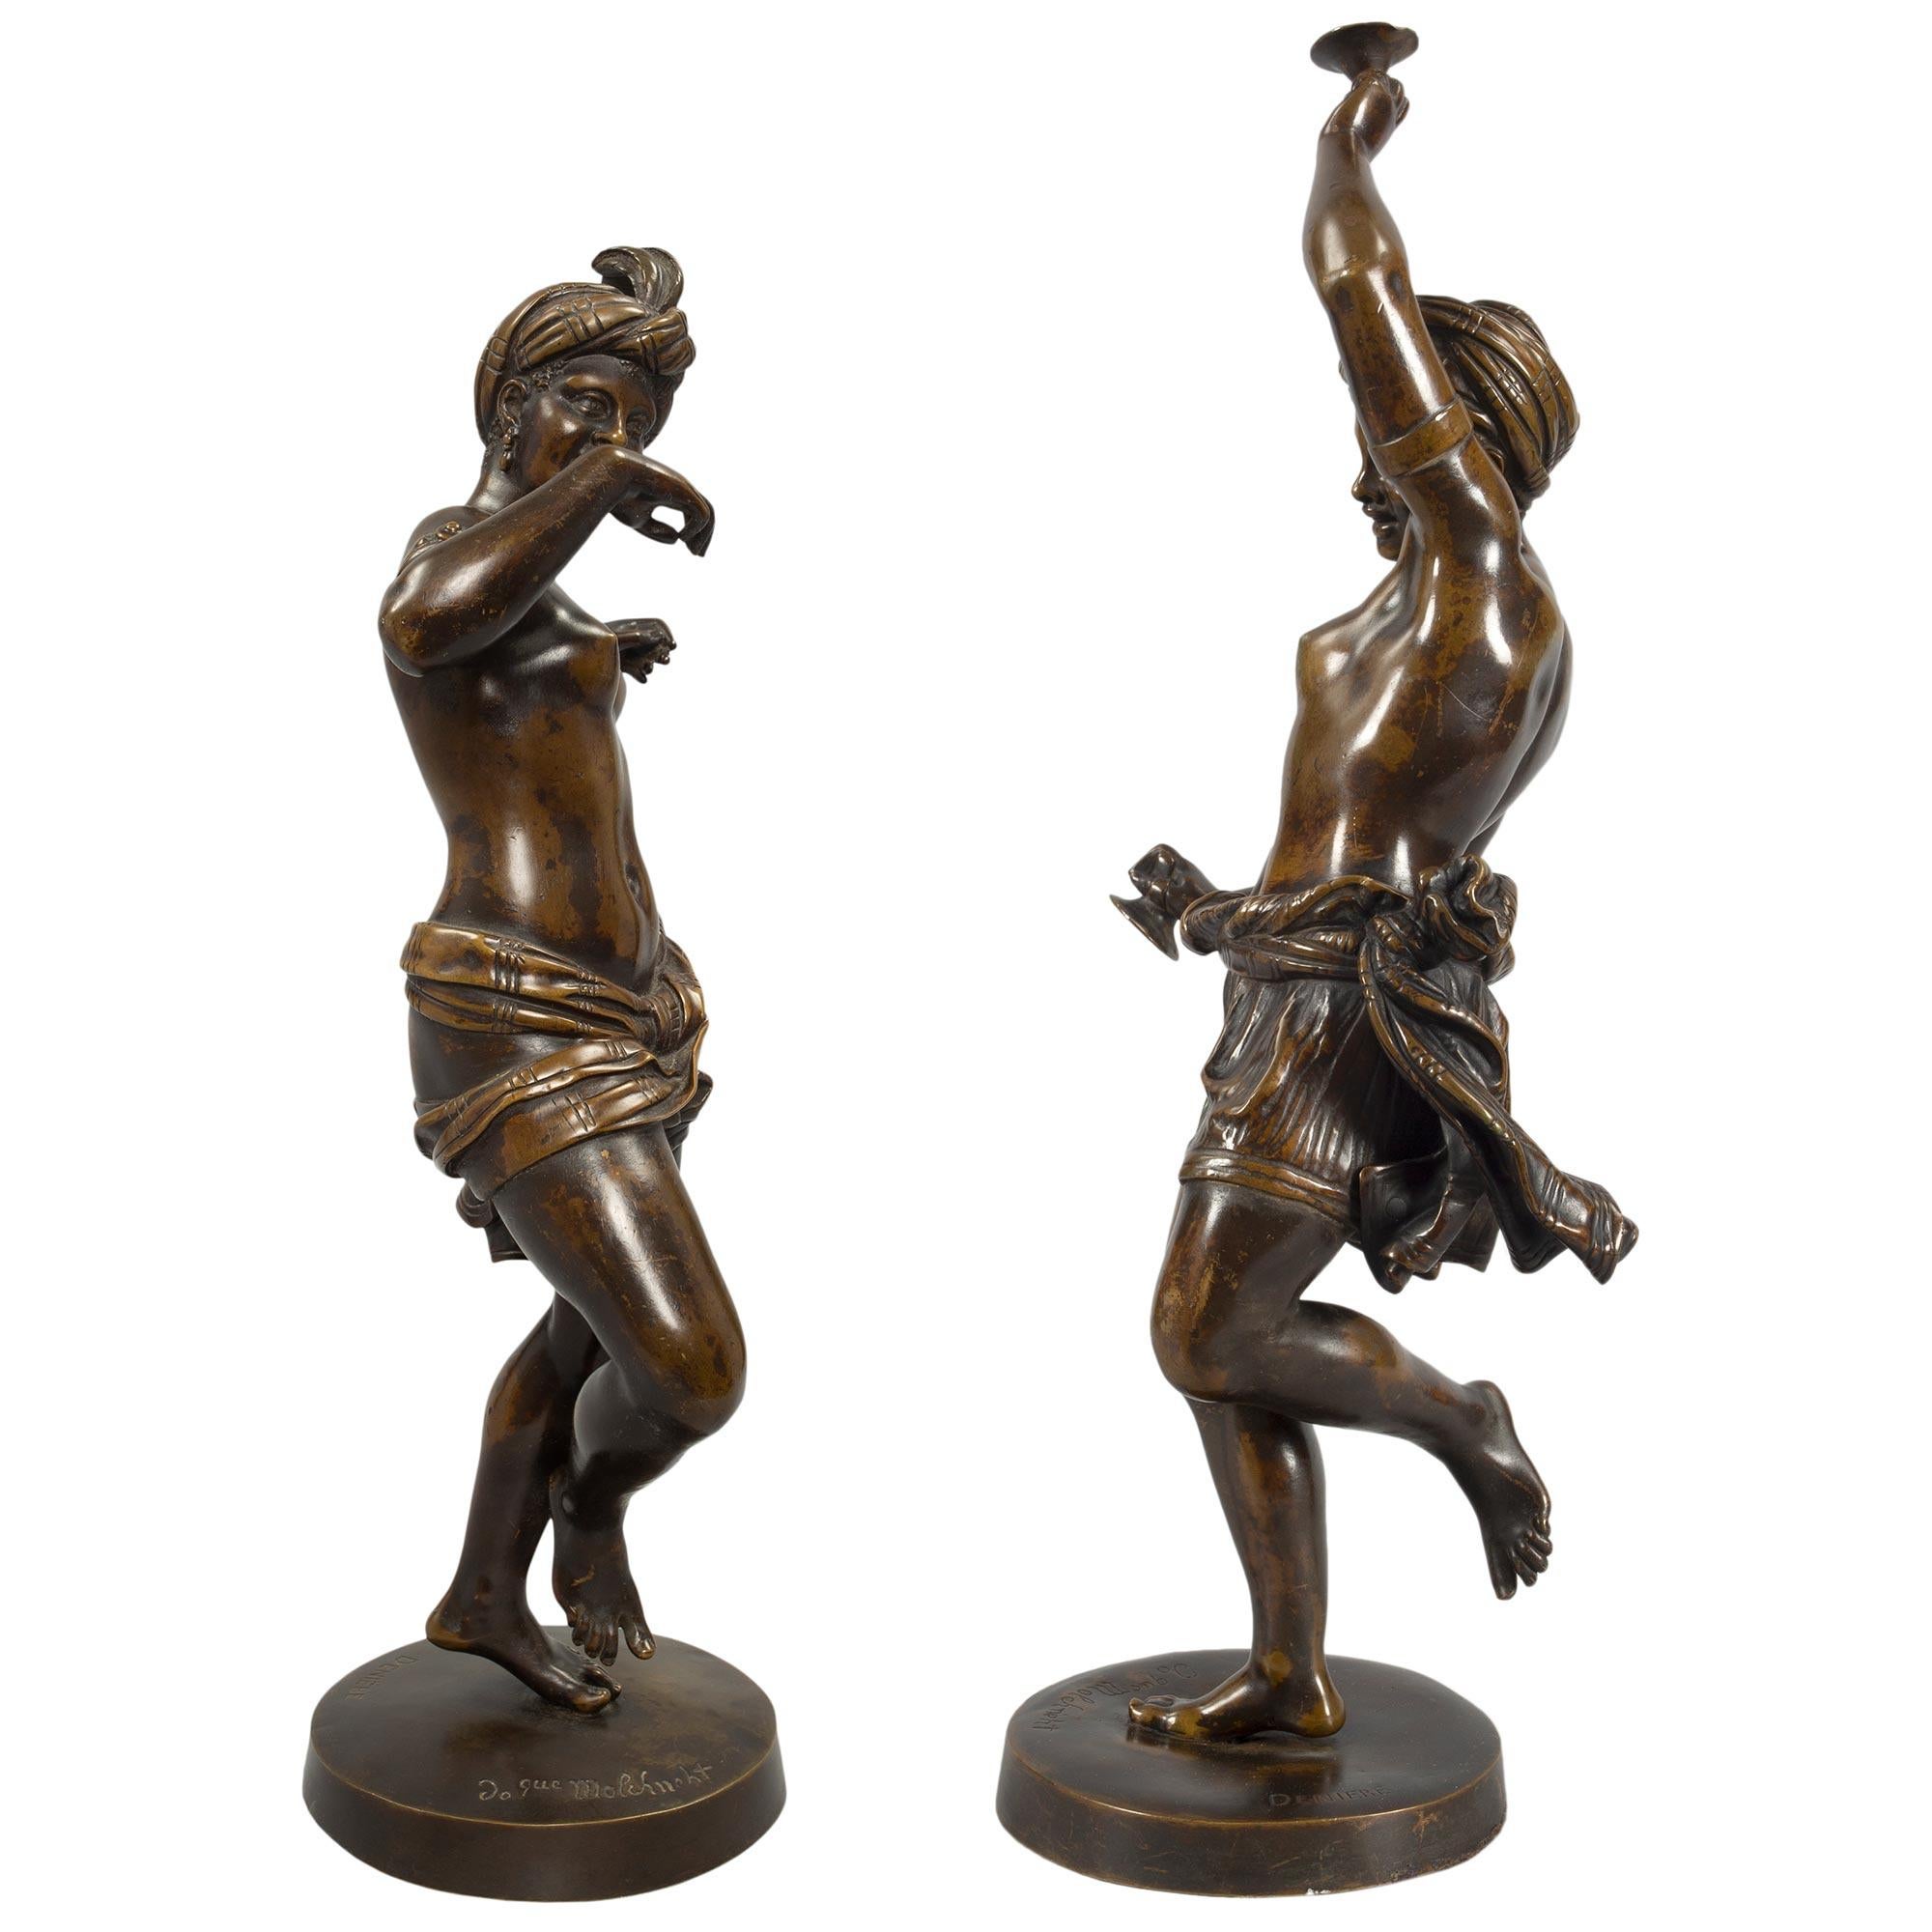 Ein hochwertiges, echtes Paar französischer klassizistischer Bronzestatuen aus dem 19. Jahrhundert, patiniert, signiert DENIERE. Jede Statue wird von einem runden Sockel getragen, auf dem die Unterschrift und eine Inschrift zu sehen sind. Die